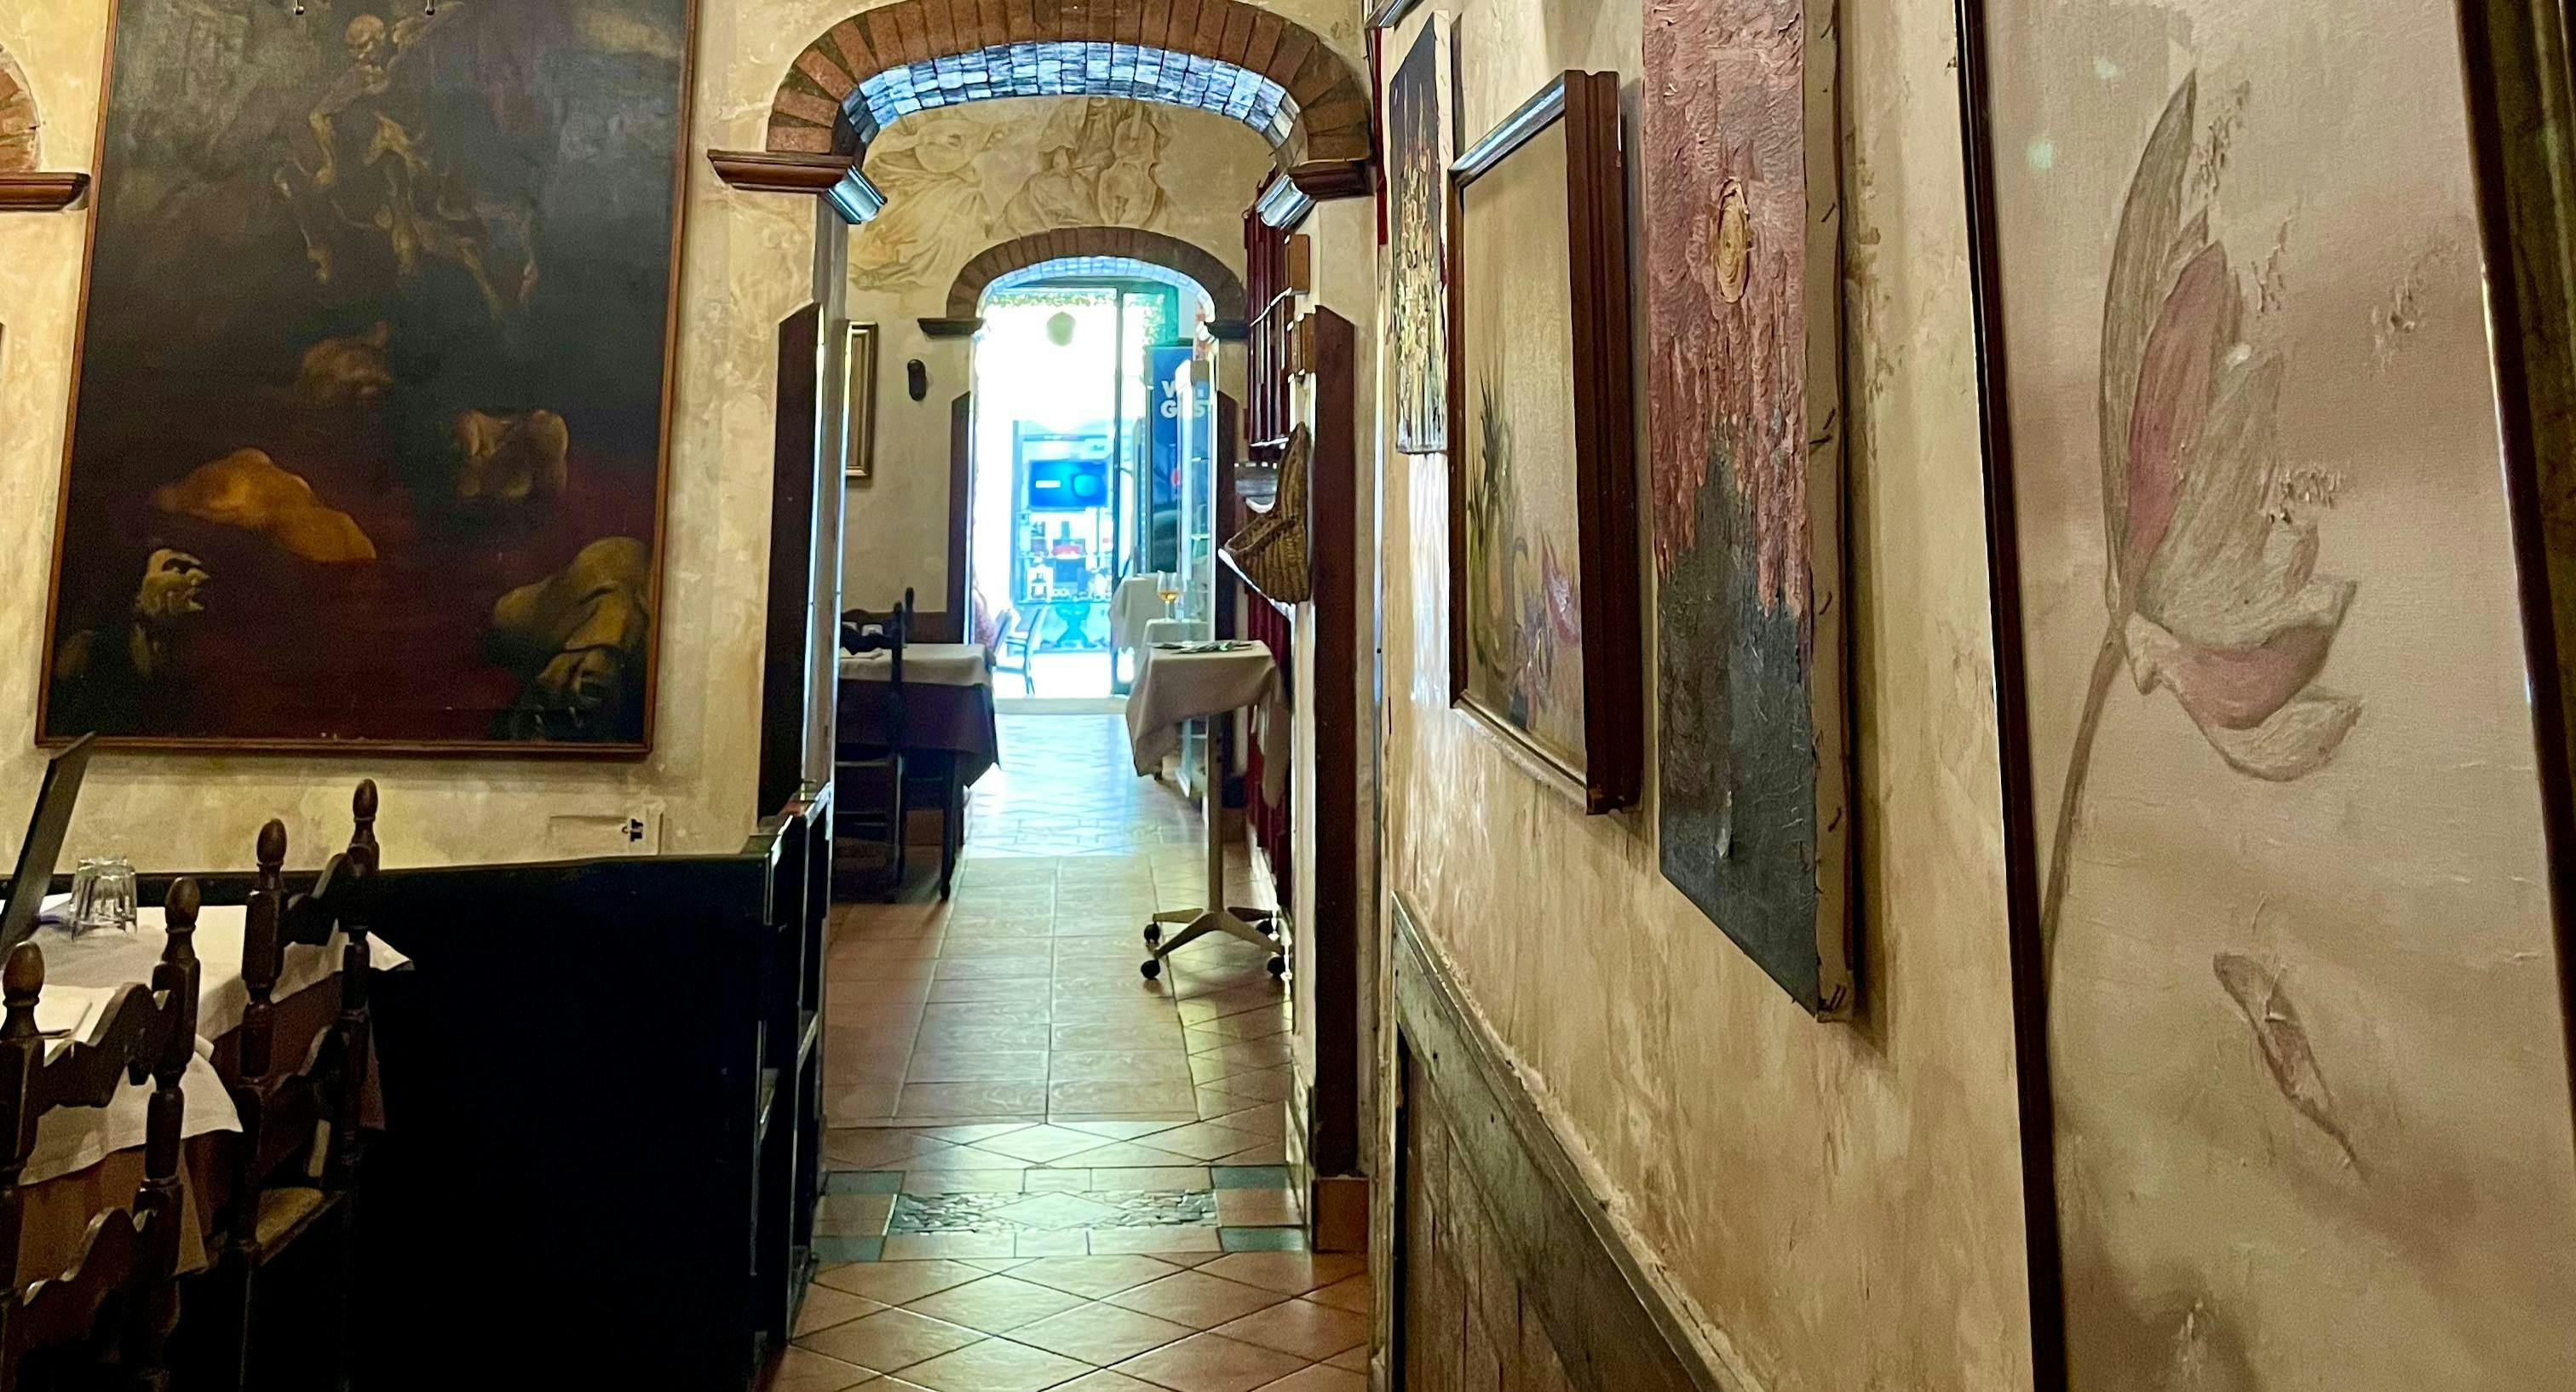 Photo of restaurant Trattoria Amici in Centro Storico, Rome